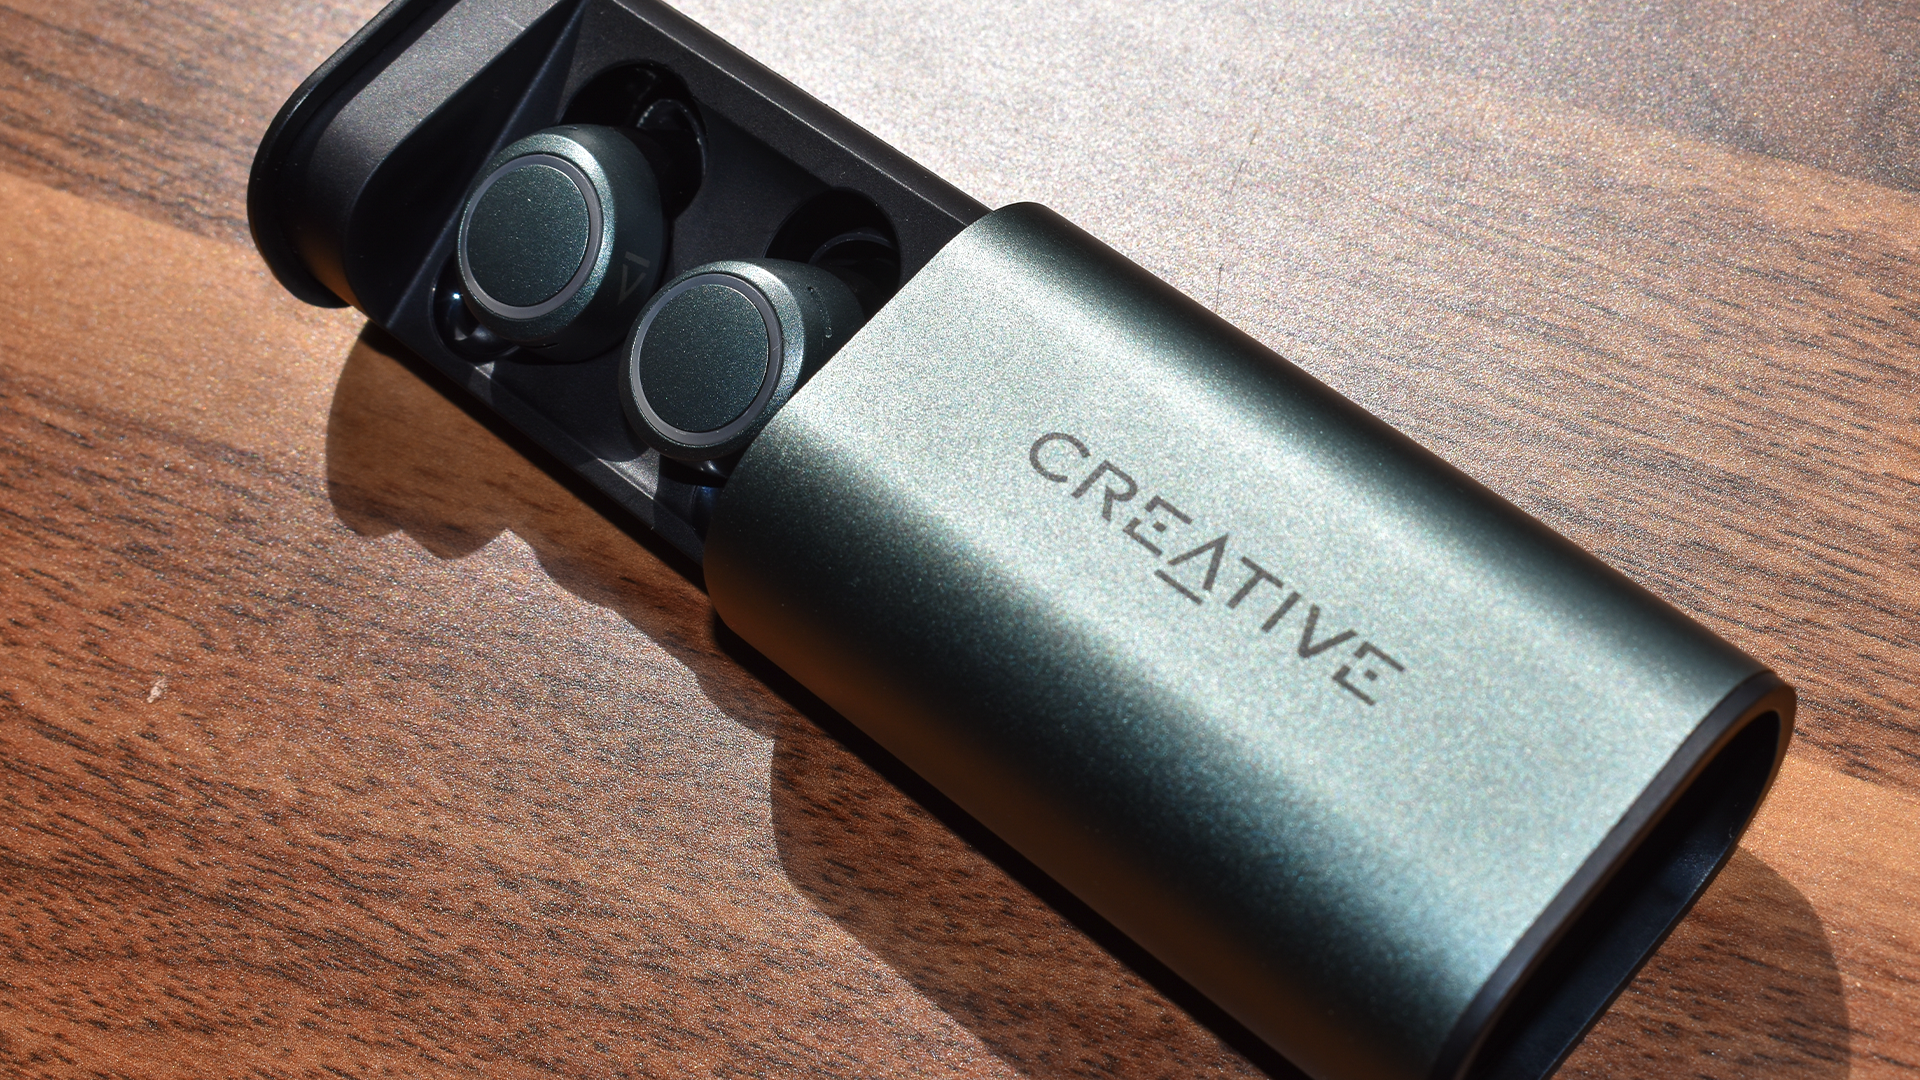 Les Creative Outlier Air V3s dans leur étui. Le tiroir extractible est sorti pour laisser apparaître les écouteurs.